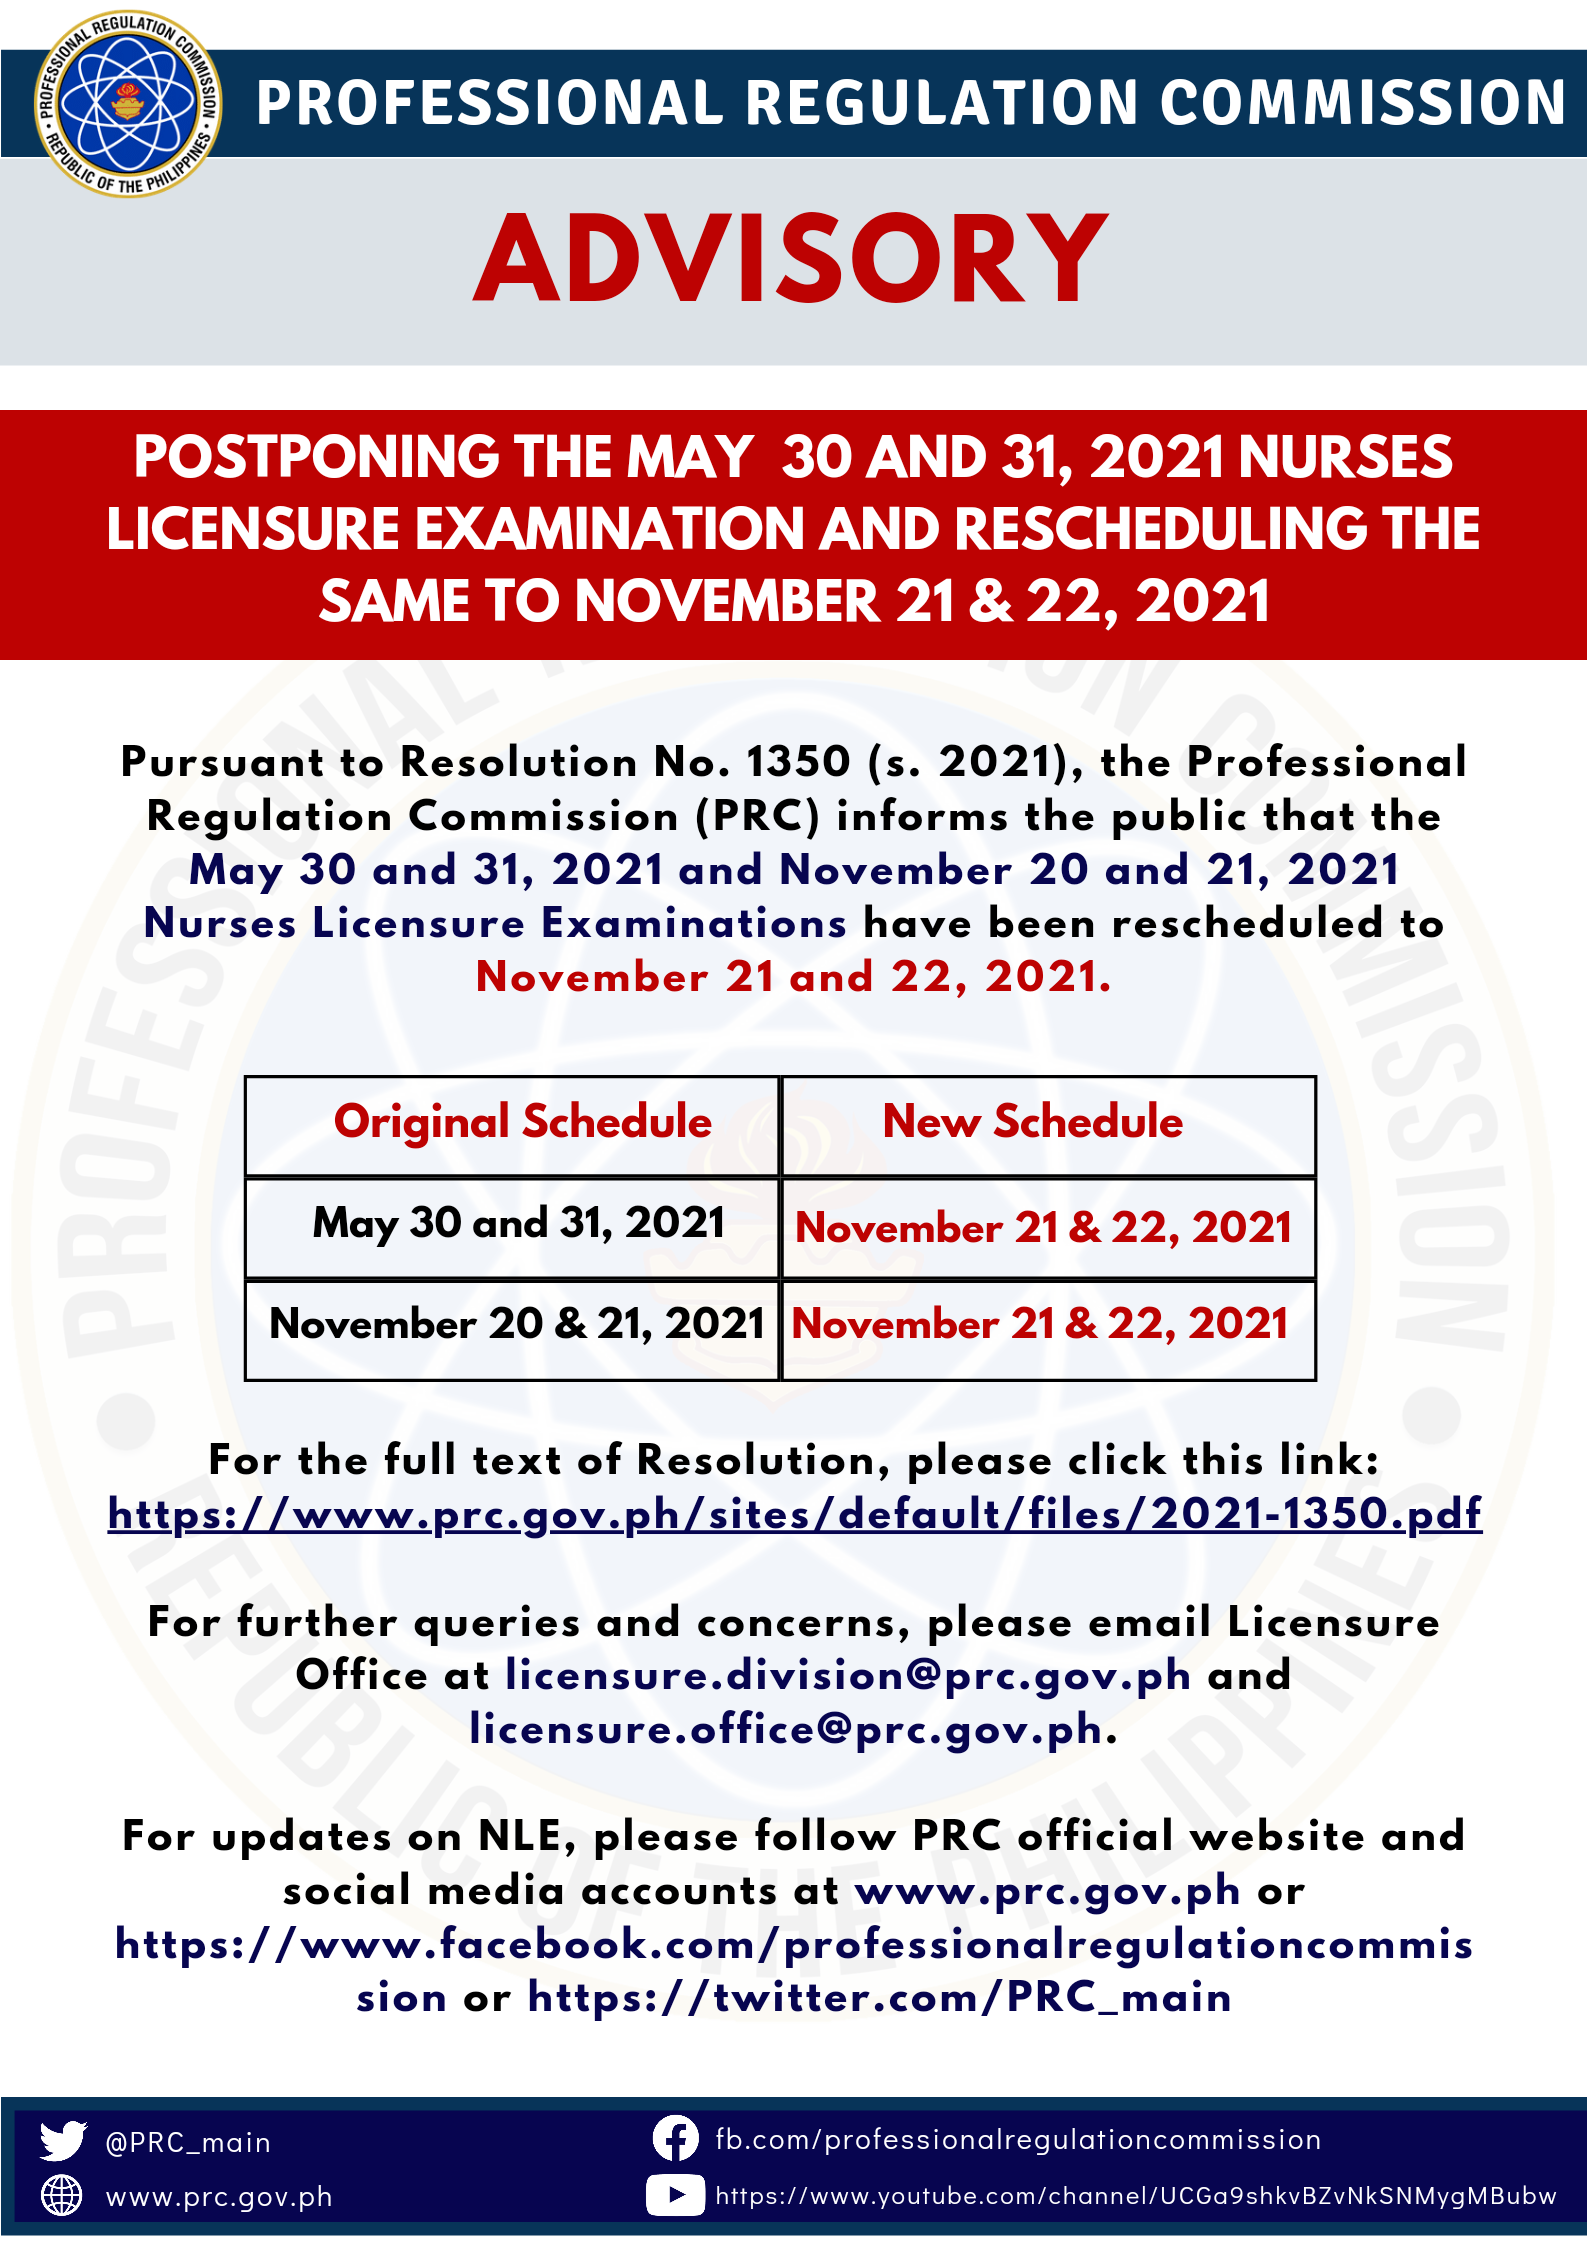 Postponing the May 30 And 31, 2021 Nurses Licensure Examination and